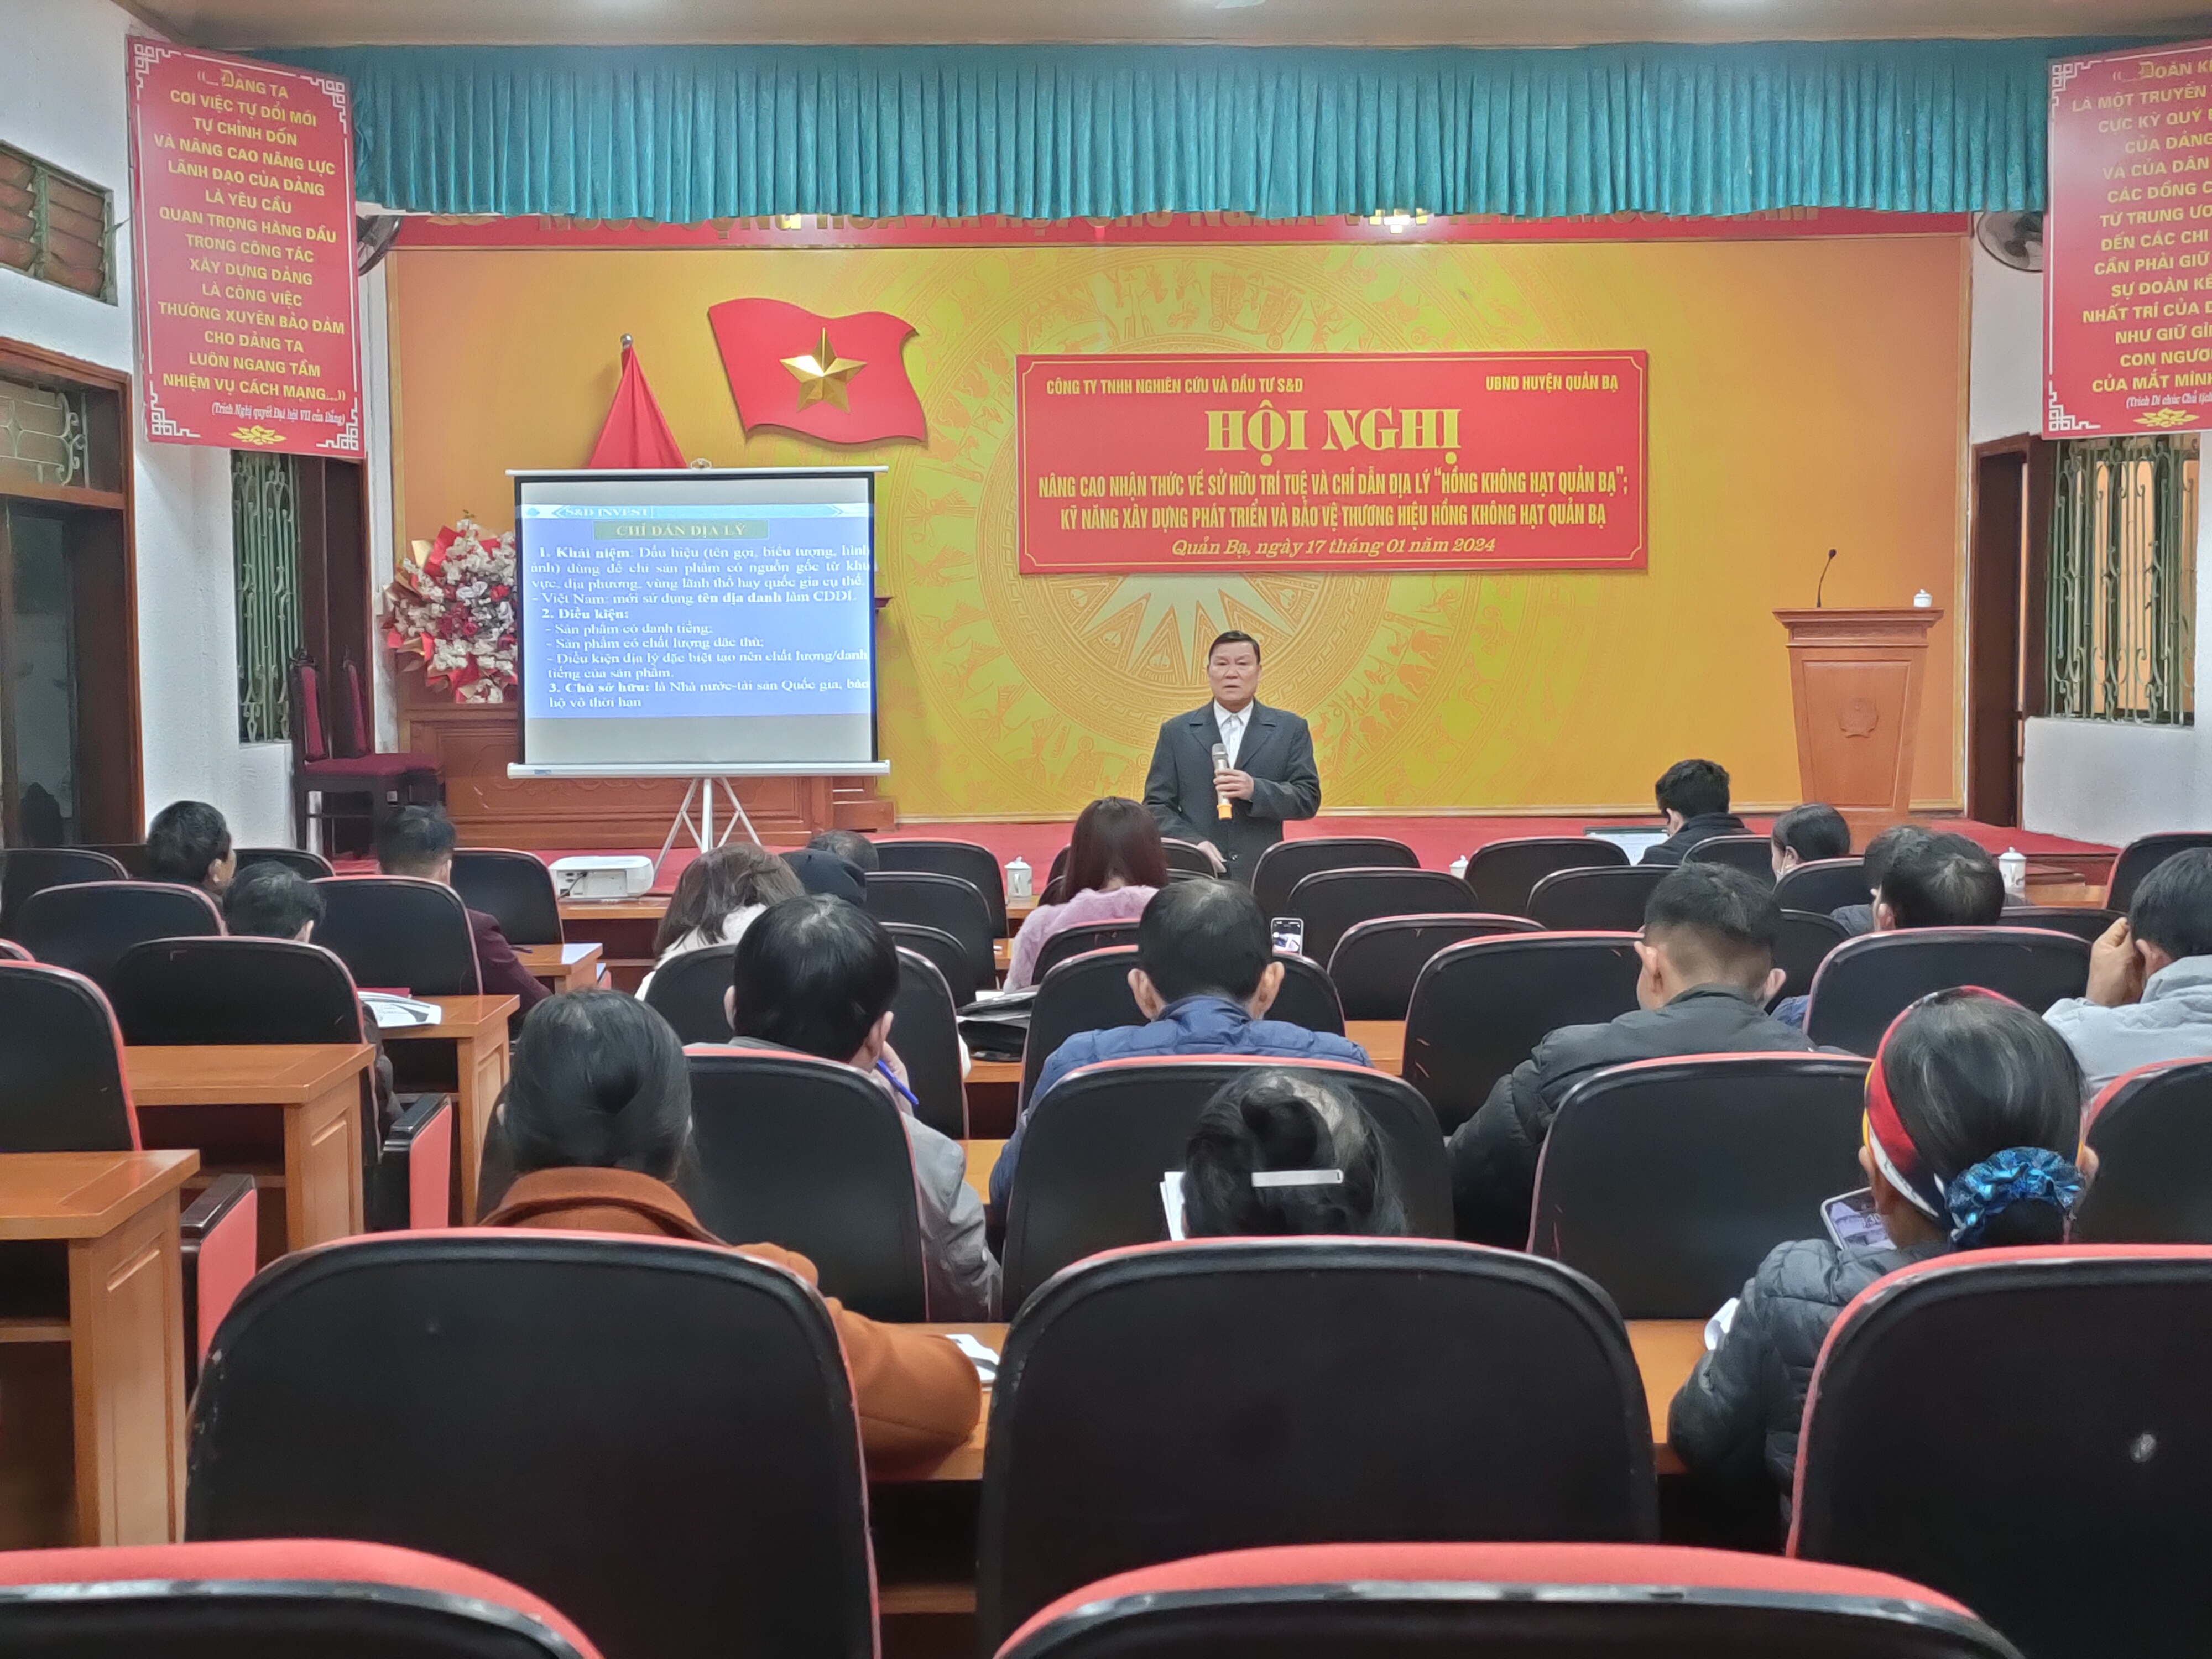 Hội nghị nâng cao nhận thức về sử hữu trí tuệ và chỉ dẫn địa lý Hồng không hạt huyện Quản Bạ.